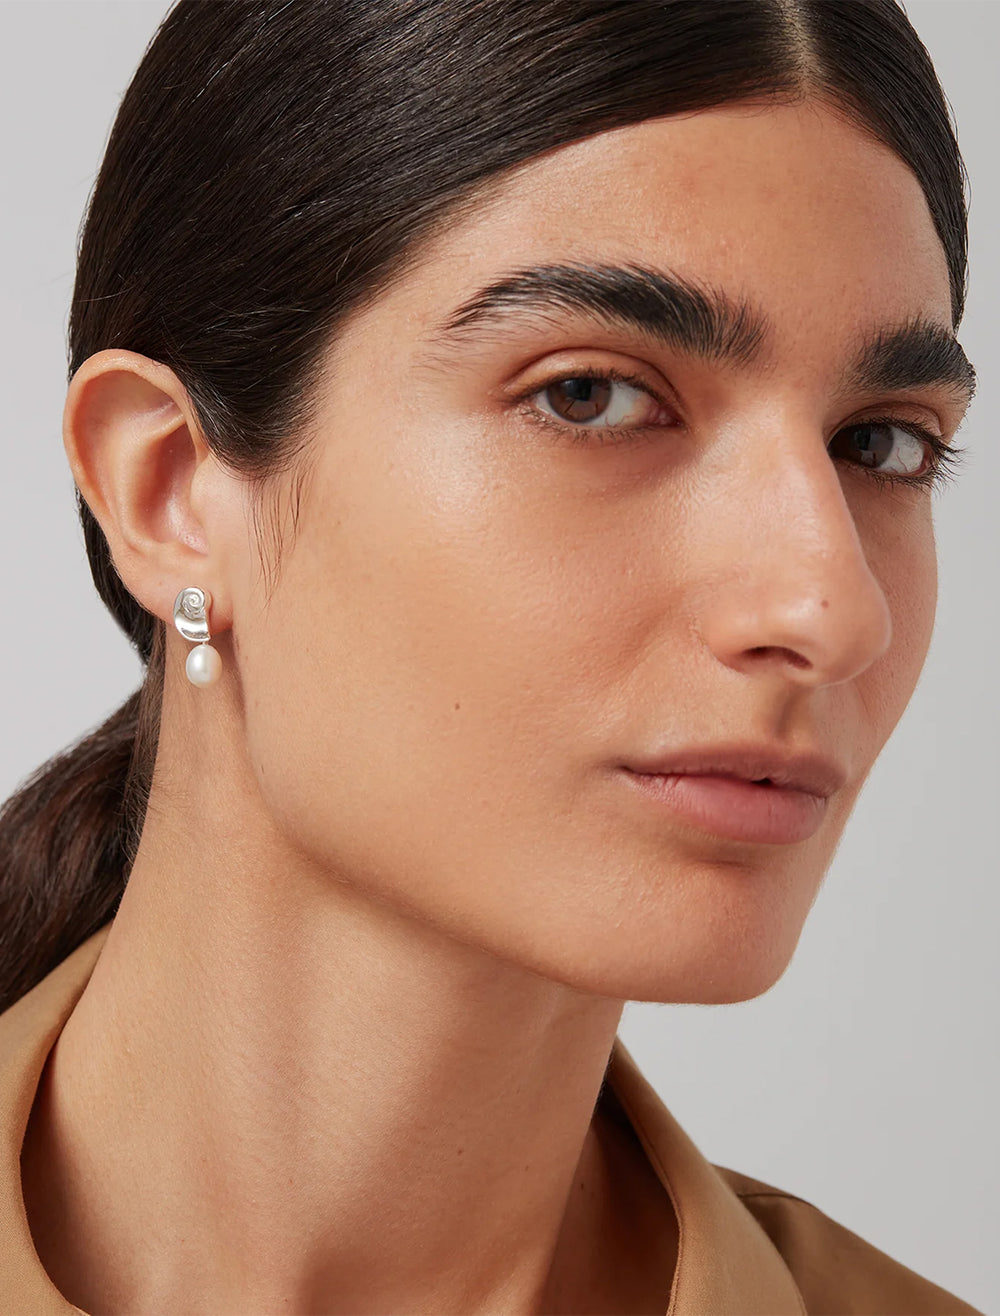 Model wearing Jenny Bird's lucille earrings in silver.